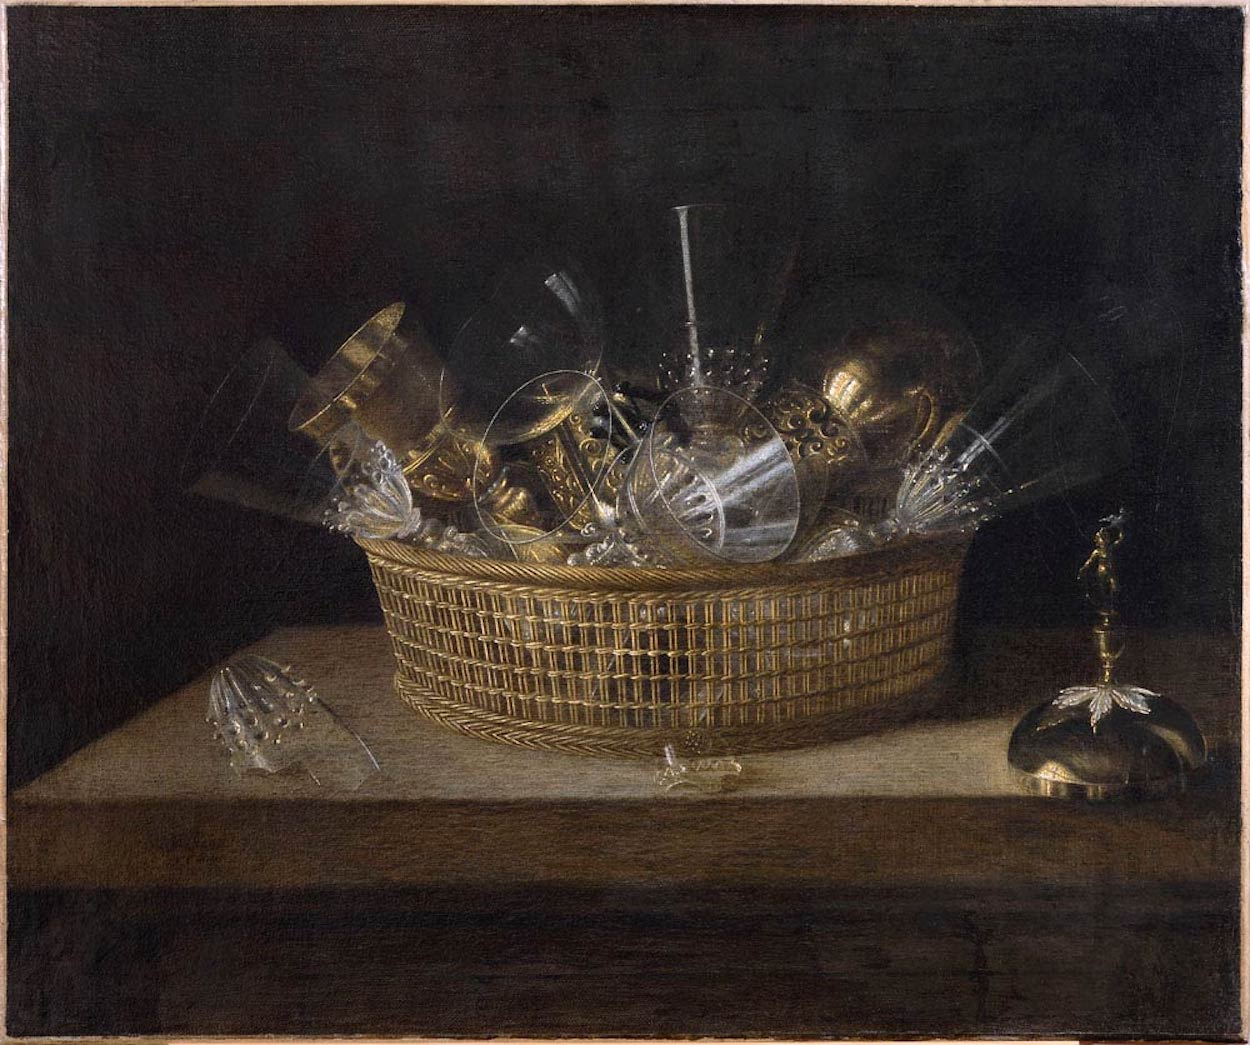 盛杯子的籃子 by Sébastien Stoskopff - 1644 - 52 x 63 cm 